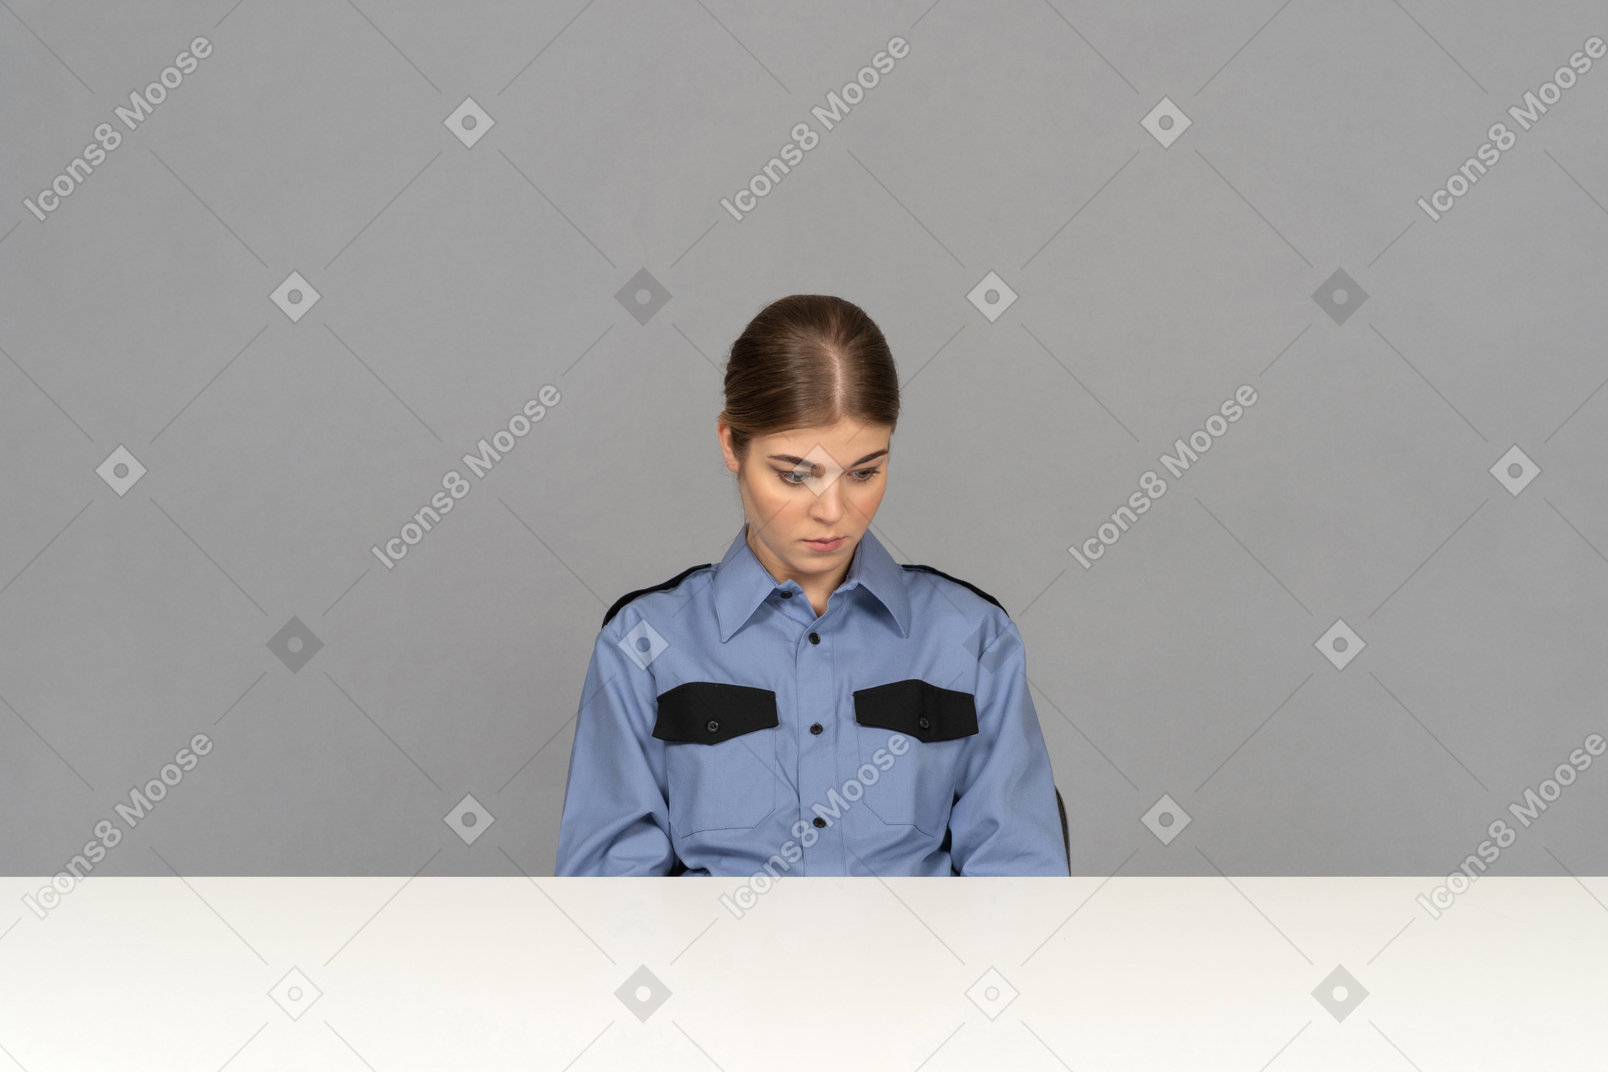 A sad female security guard sitting still